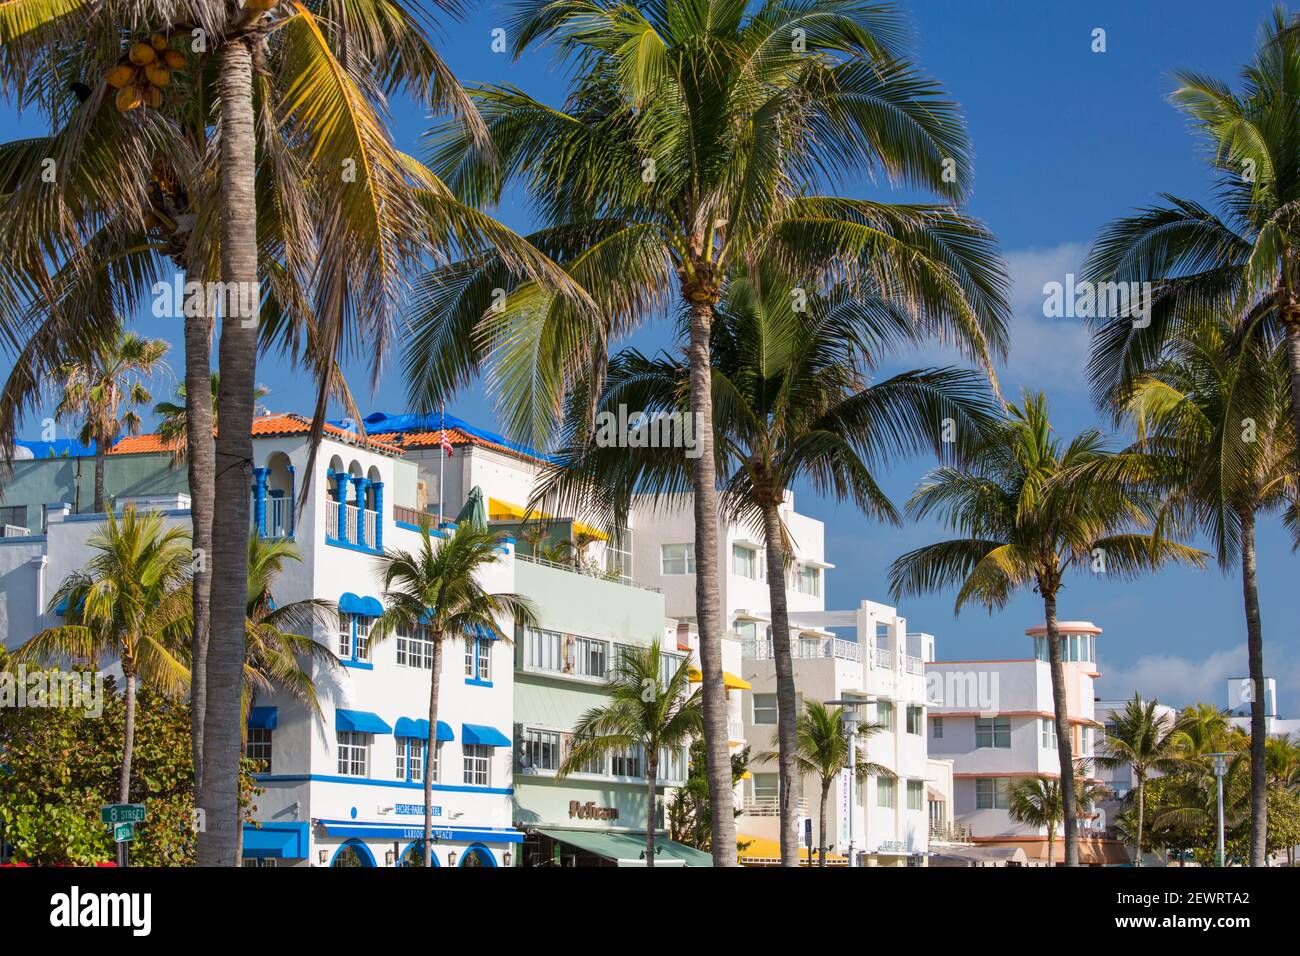 Farbenfrohe Hotelfassaden und imposante Palmen, Ocean Drive, historisches Art déco-Viertel, South Beach, Miami Beach, Florida, USA Stockfoto